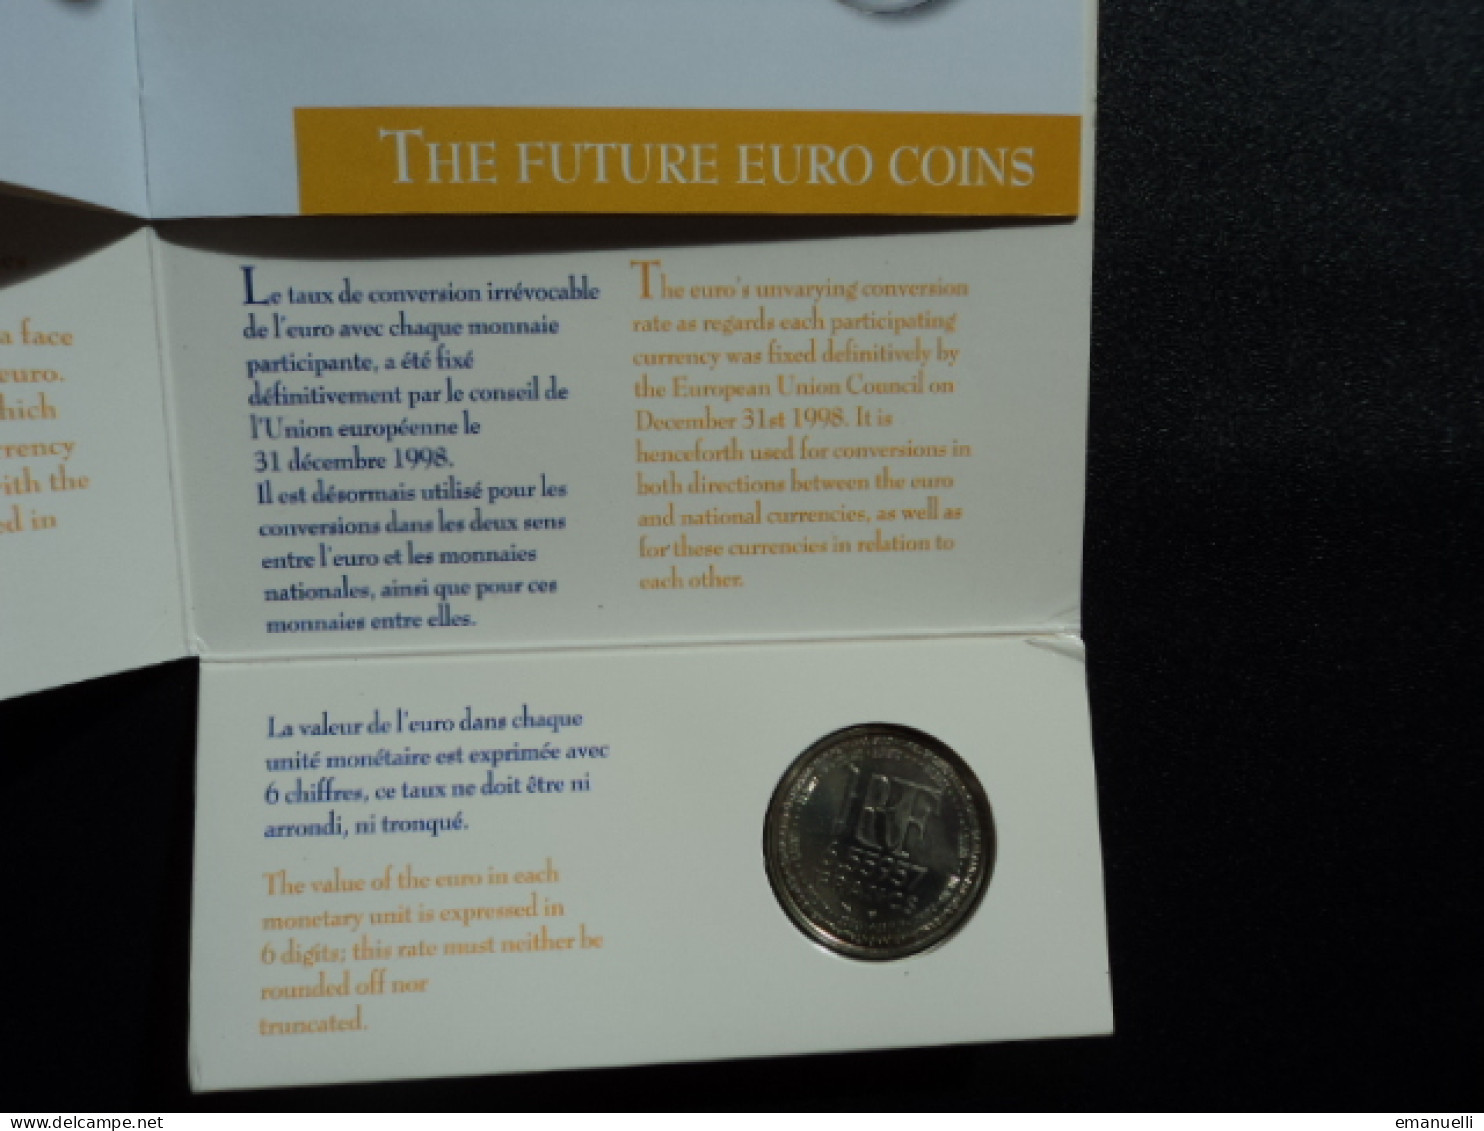 EUROPA : La Pièce Symbole De La Parité De L'euro  * - Commemorative